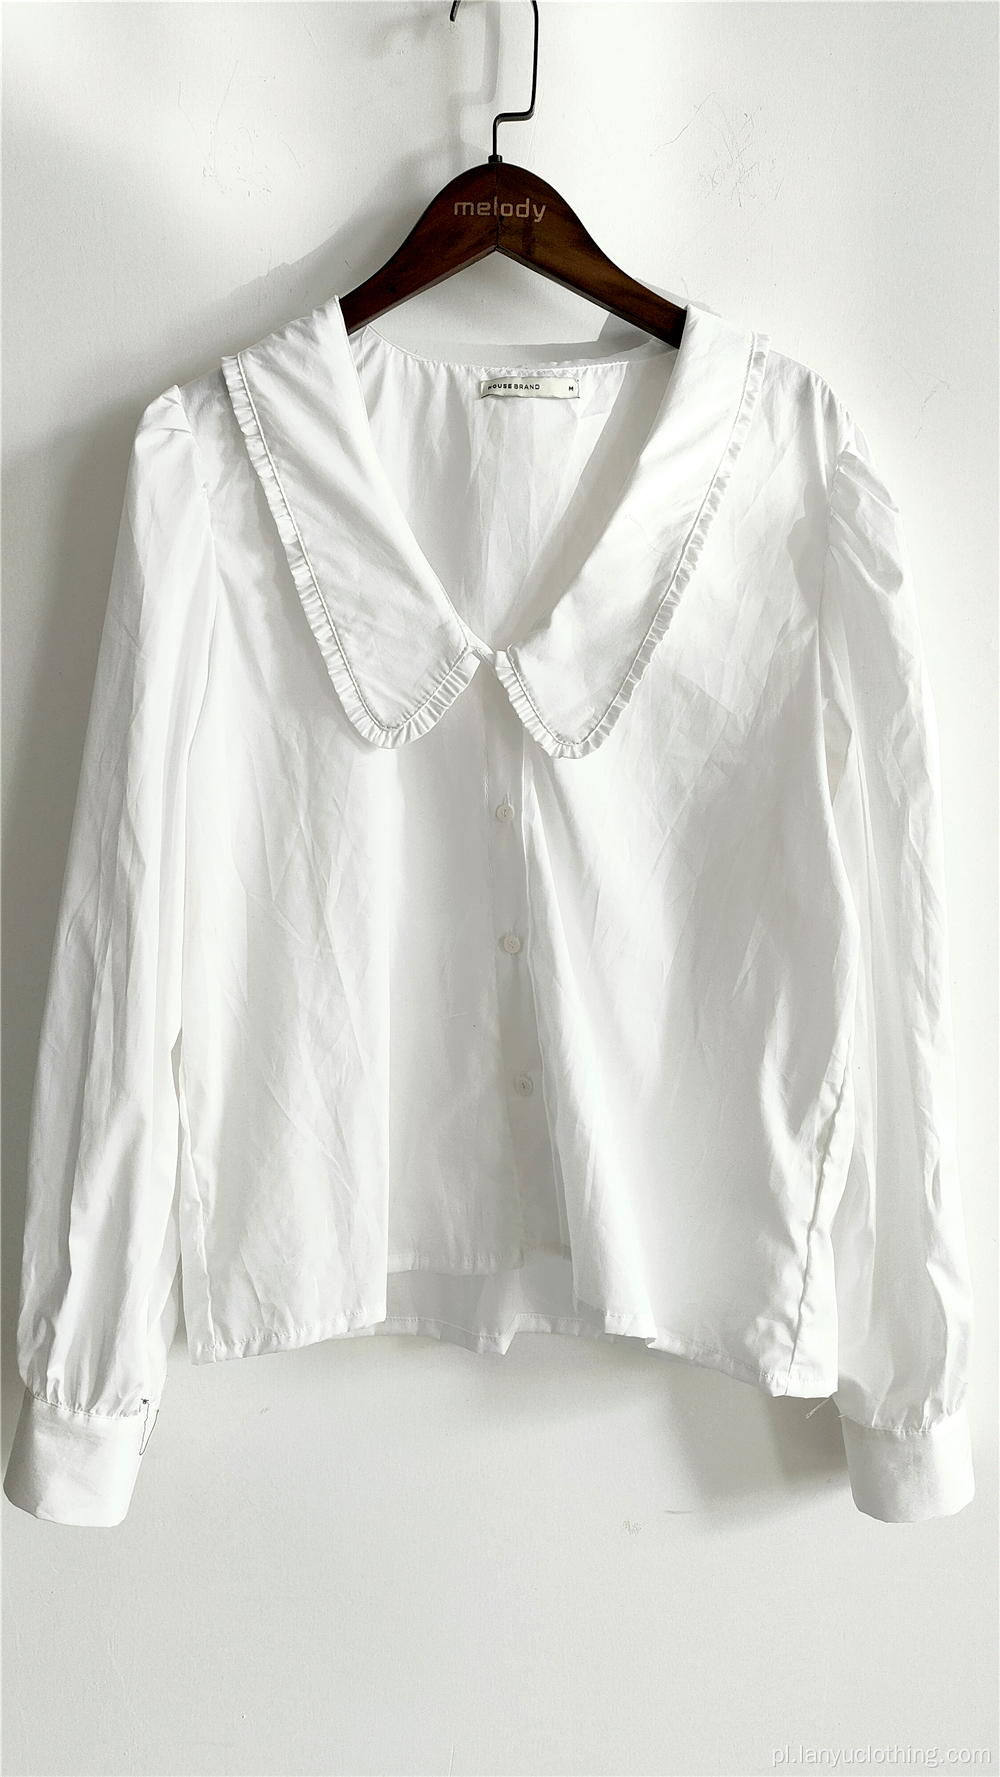 Biała luźna bluzka w stylu vintage